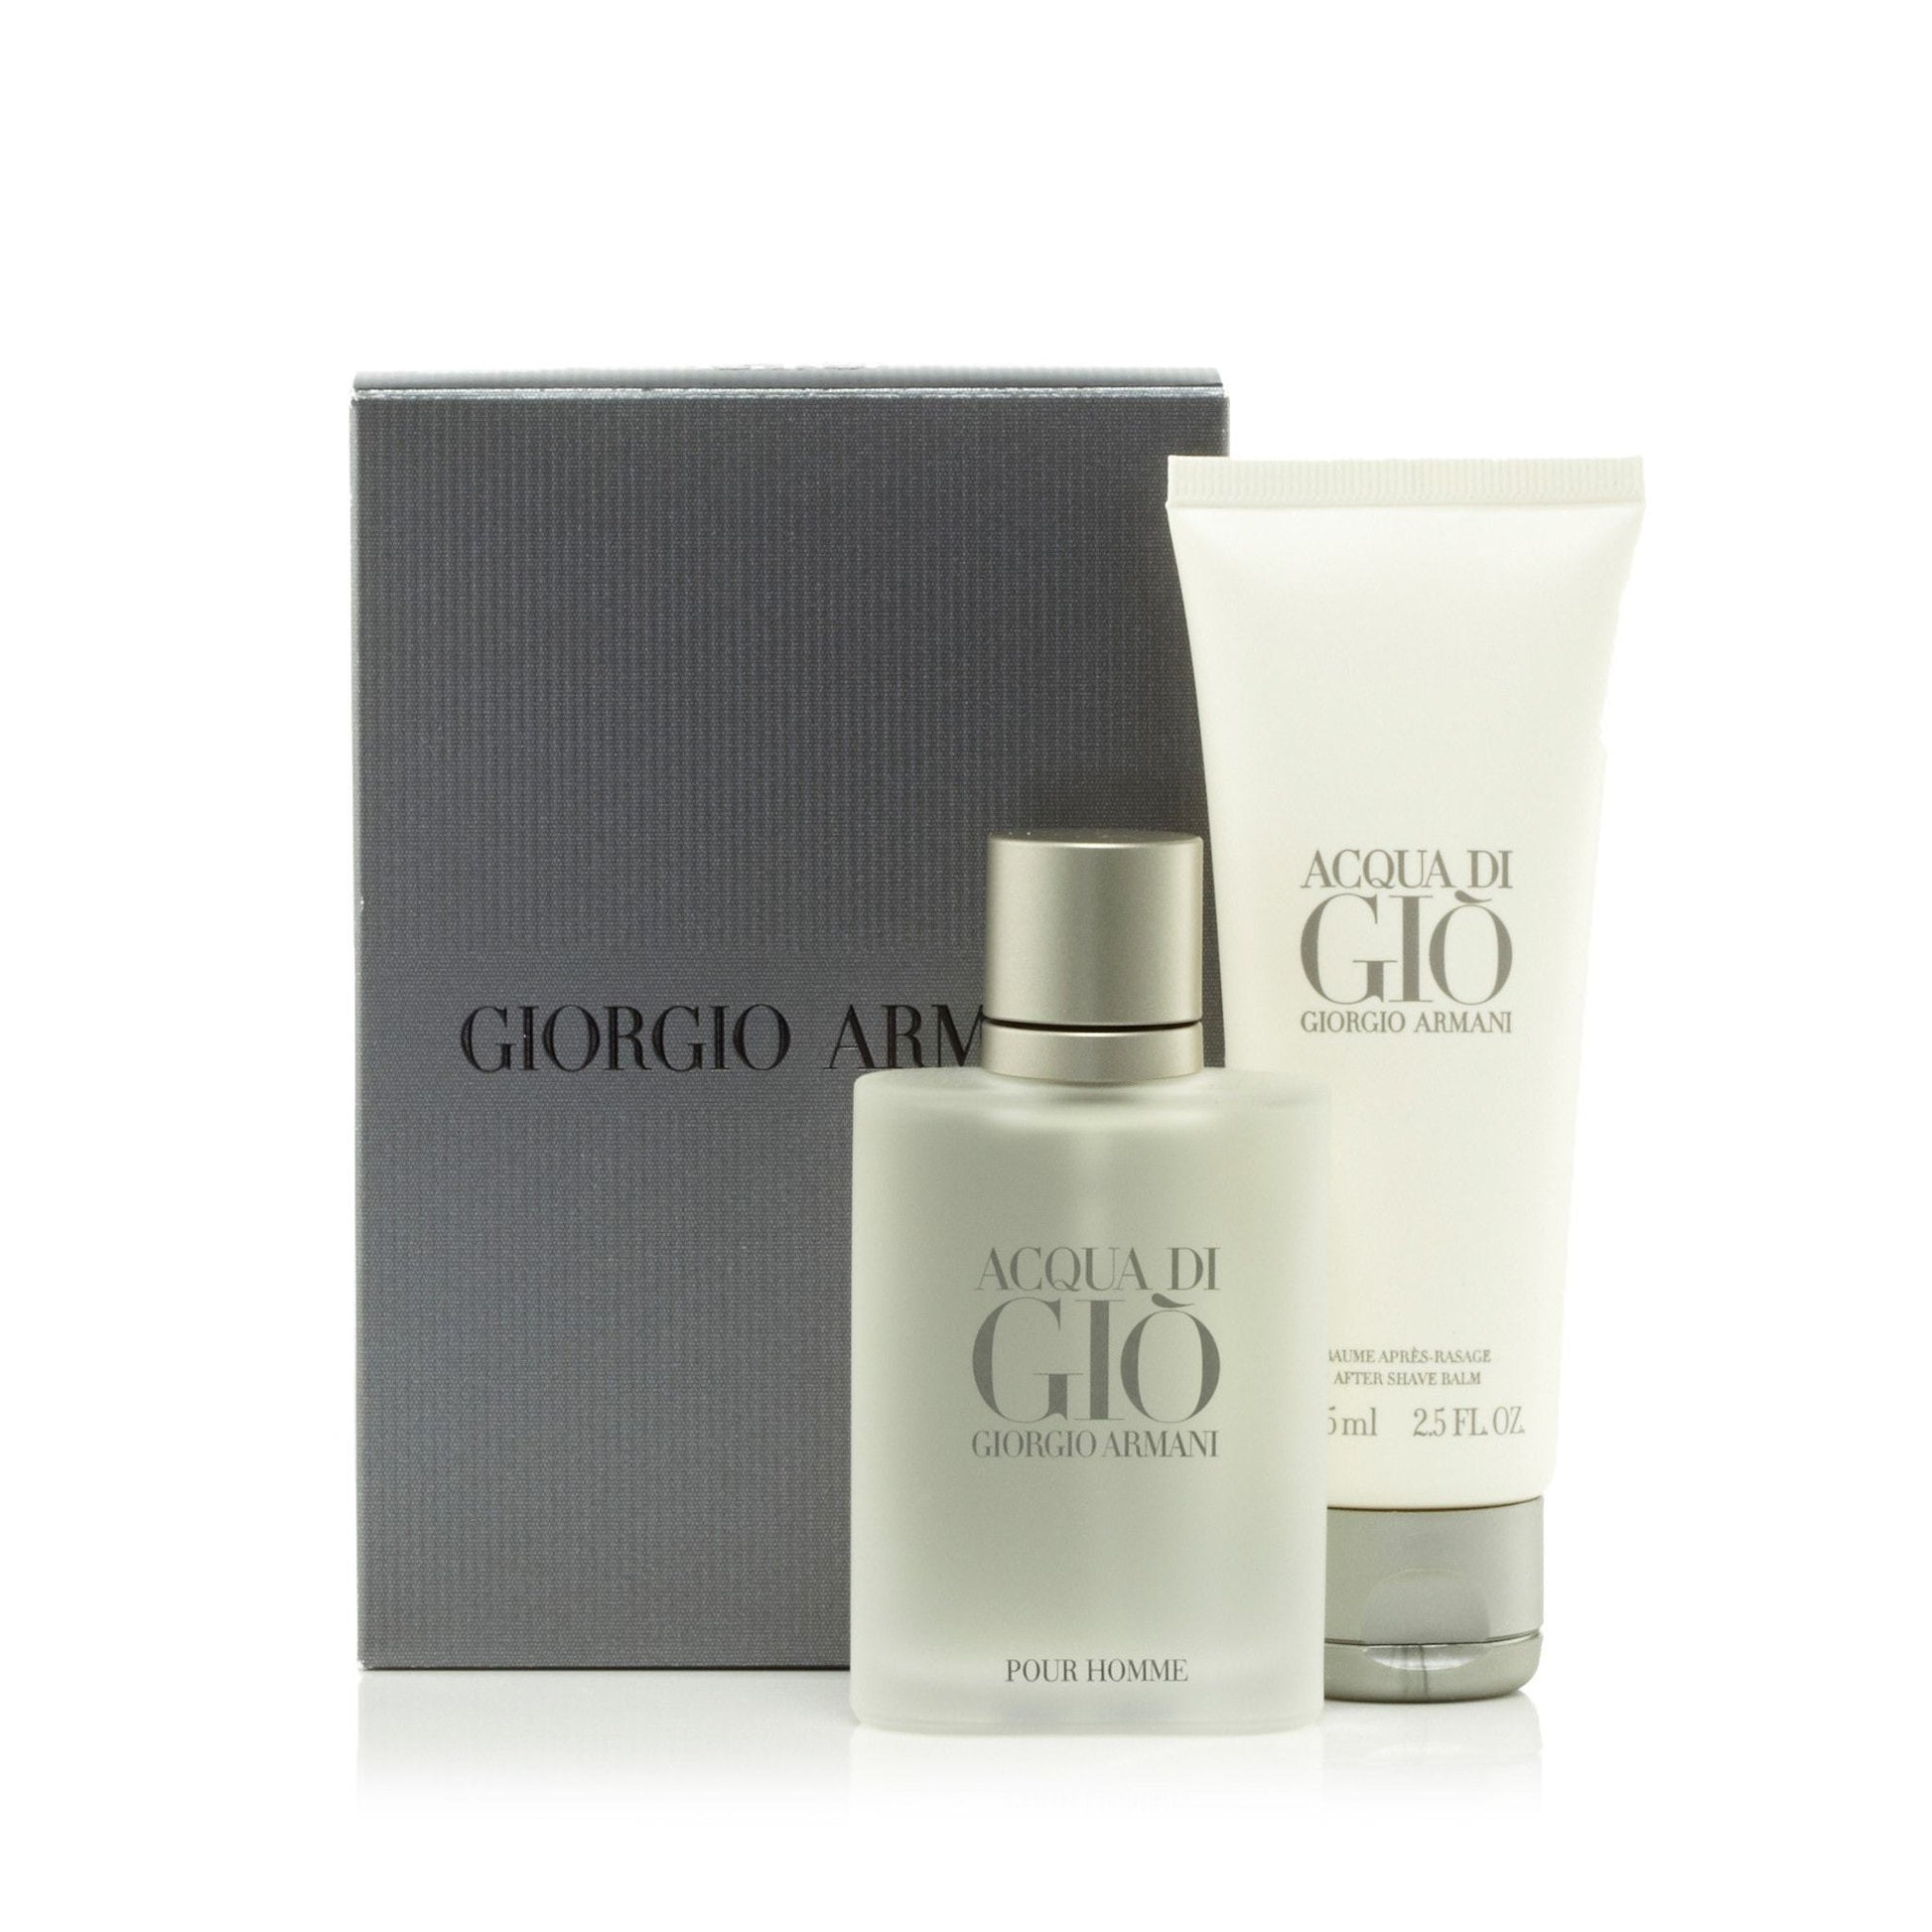 Acqua Di Gio Gift Set for Men by Giorgio Armani, Product image 2